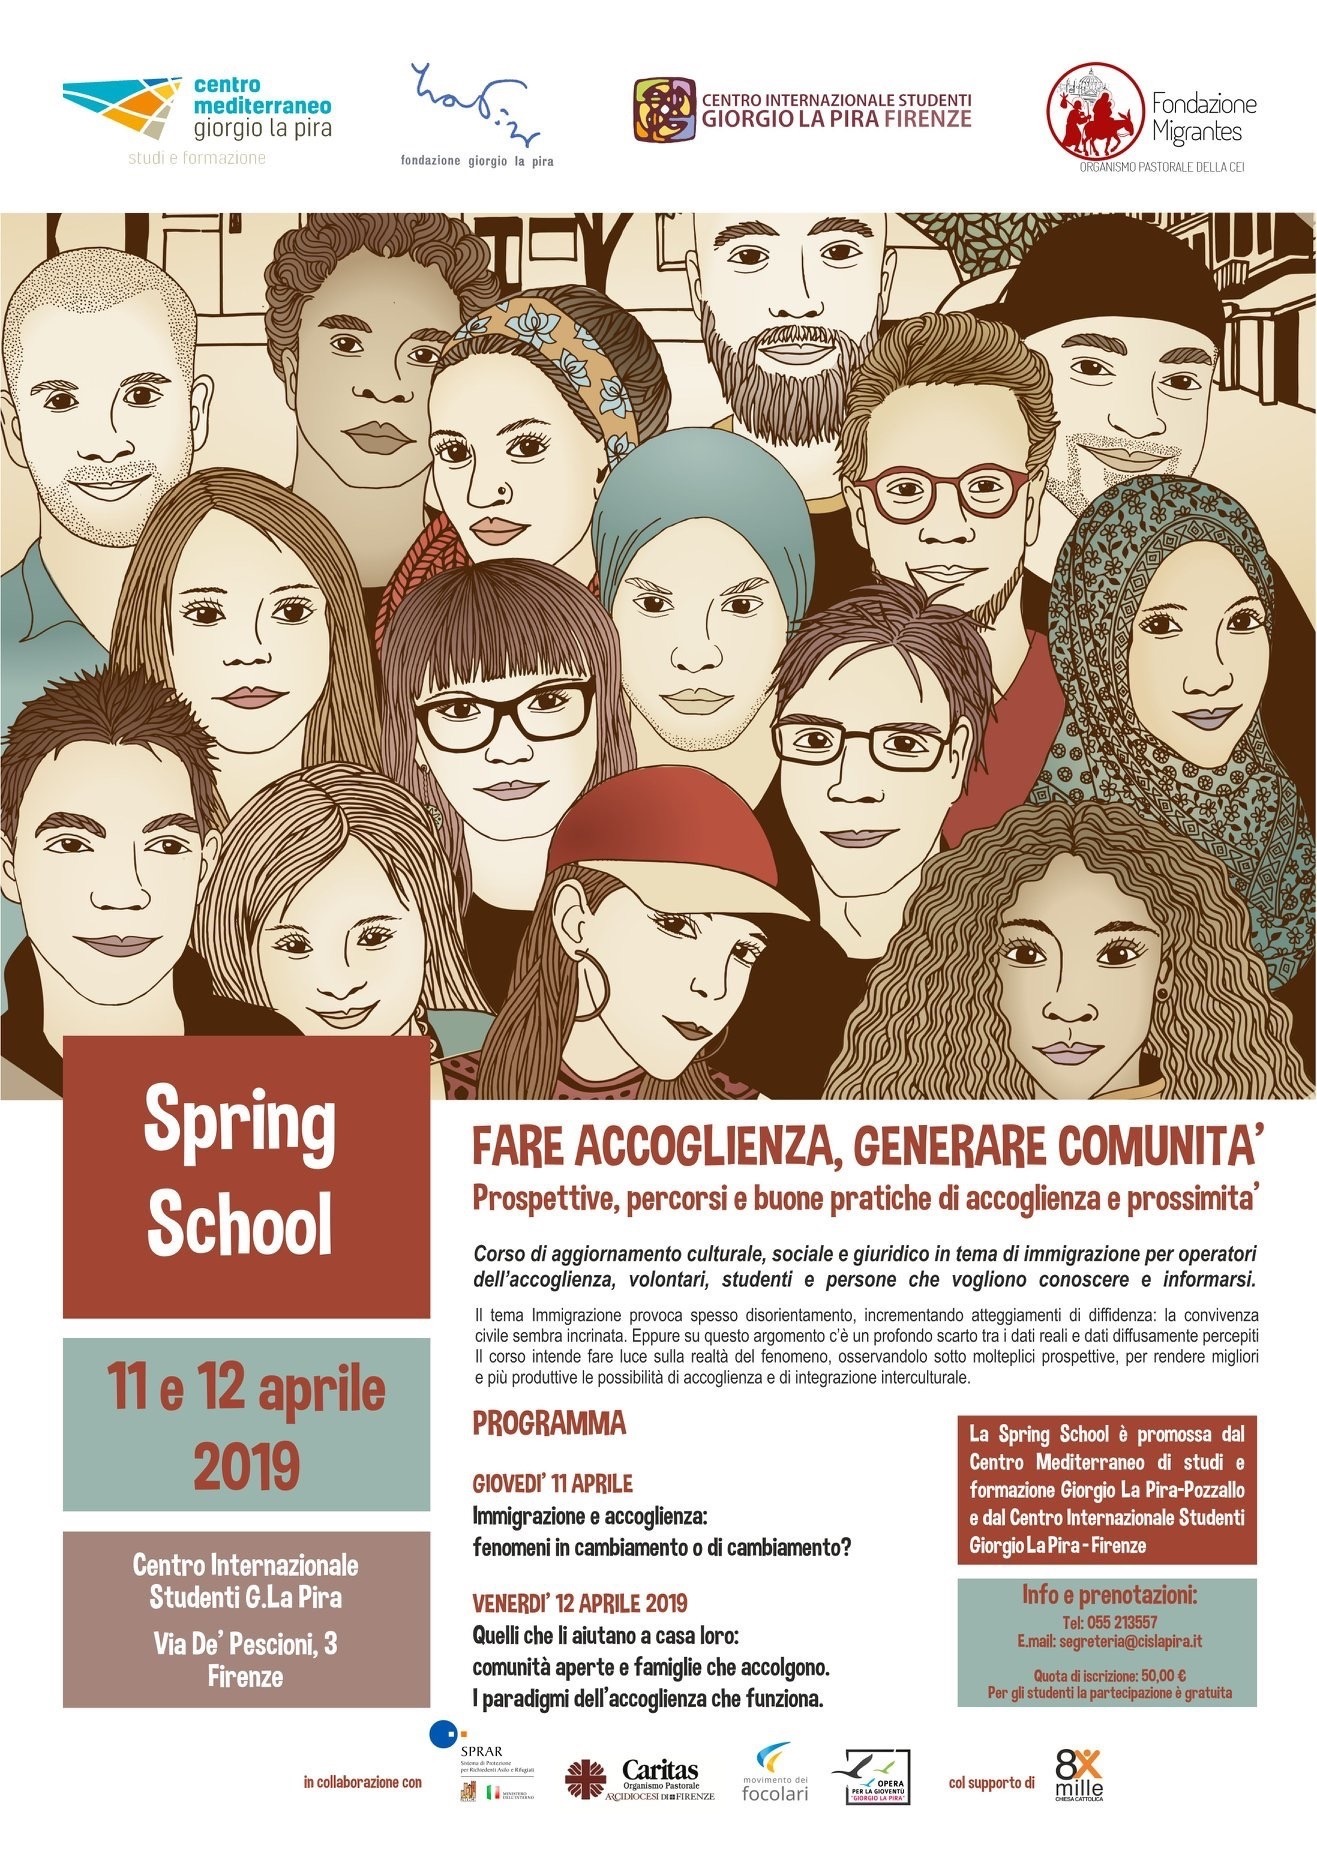 Firenze, Spring School: "Fare accoglienza, generare comunità"